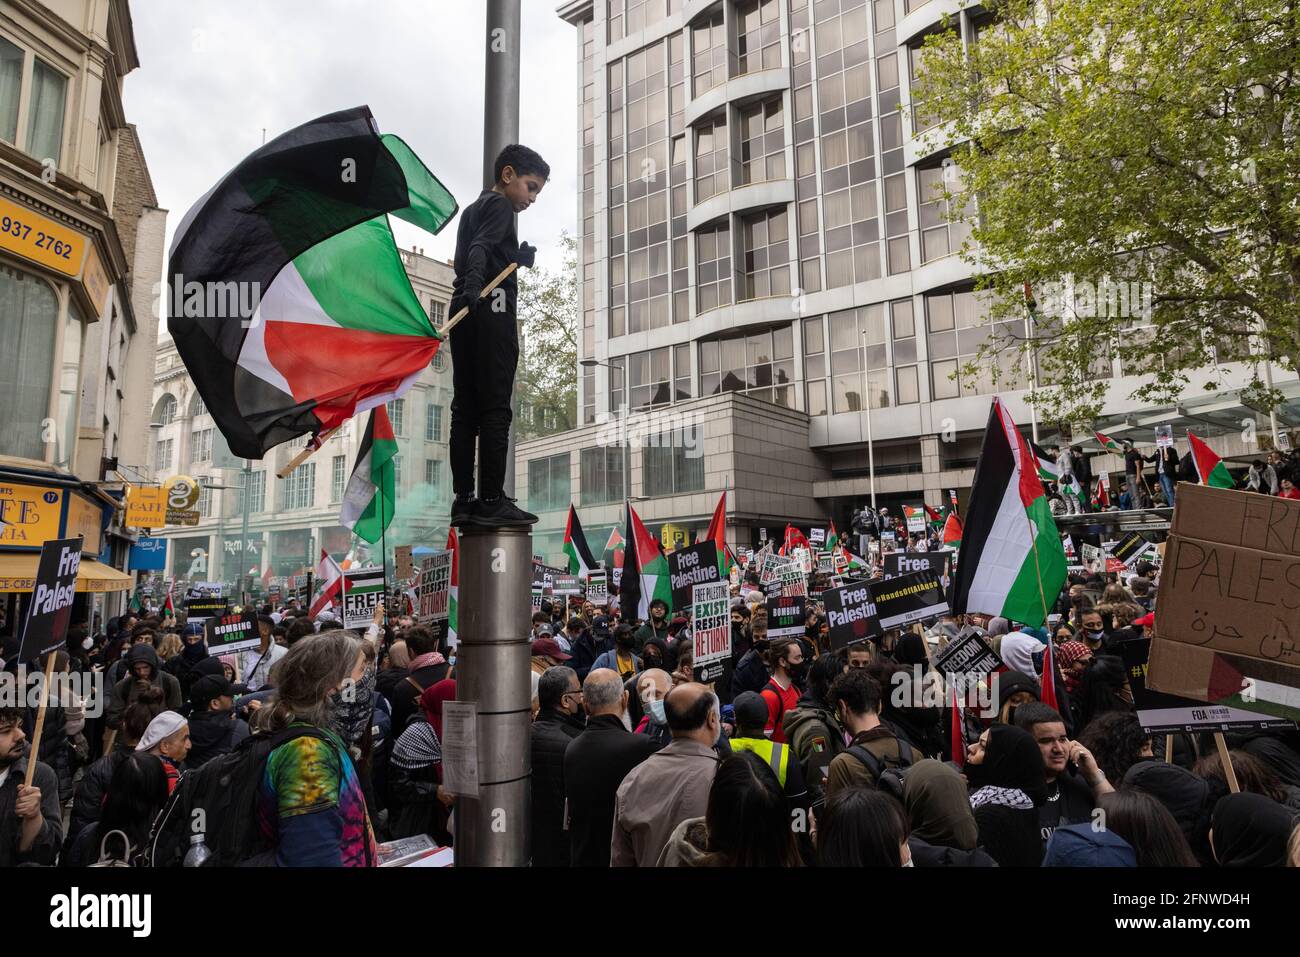 Un enfant a un lampadaire qui agite le drapeau sur la foule, manifestation de solidarité « Palestine libre », Londres, 15 mai 2021 Banque D'Images